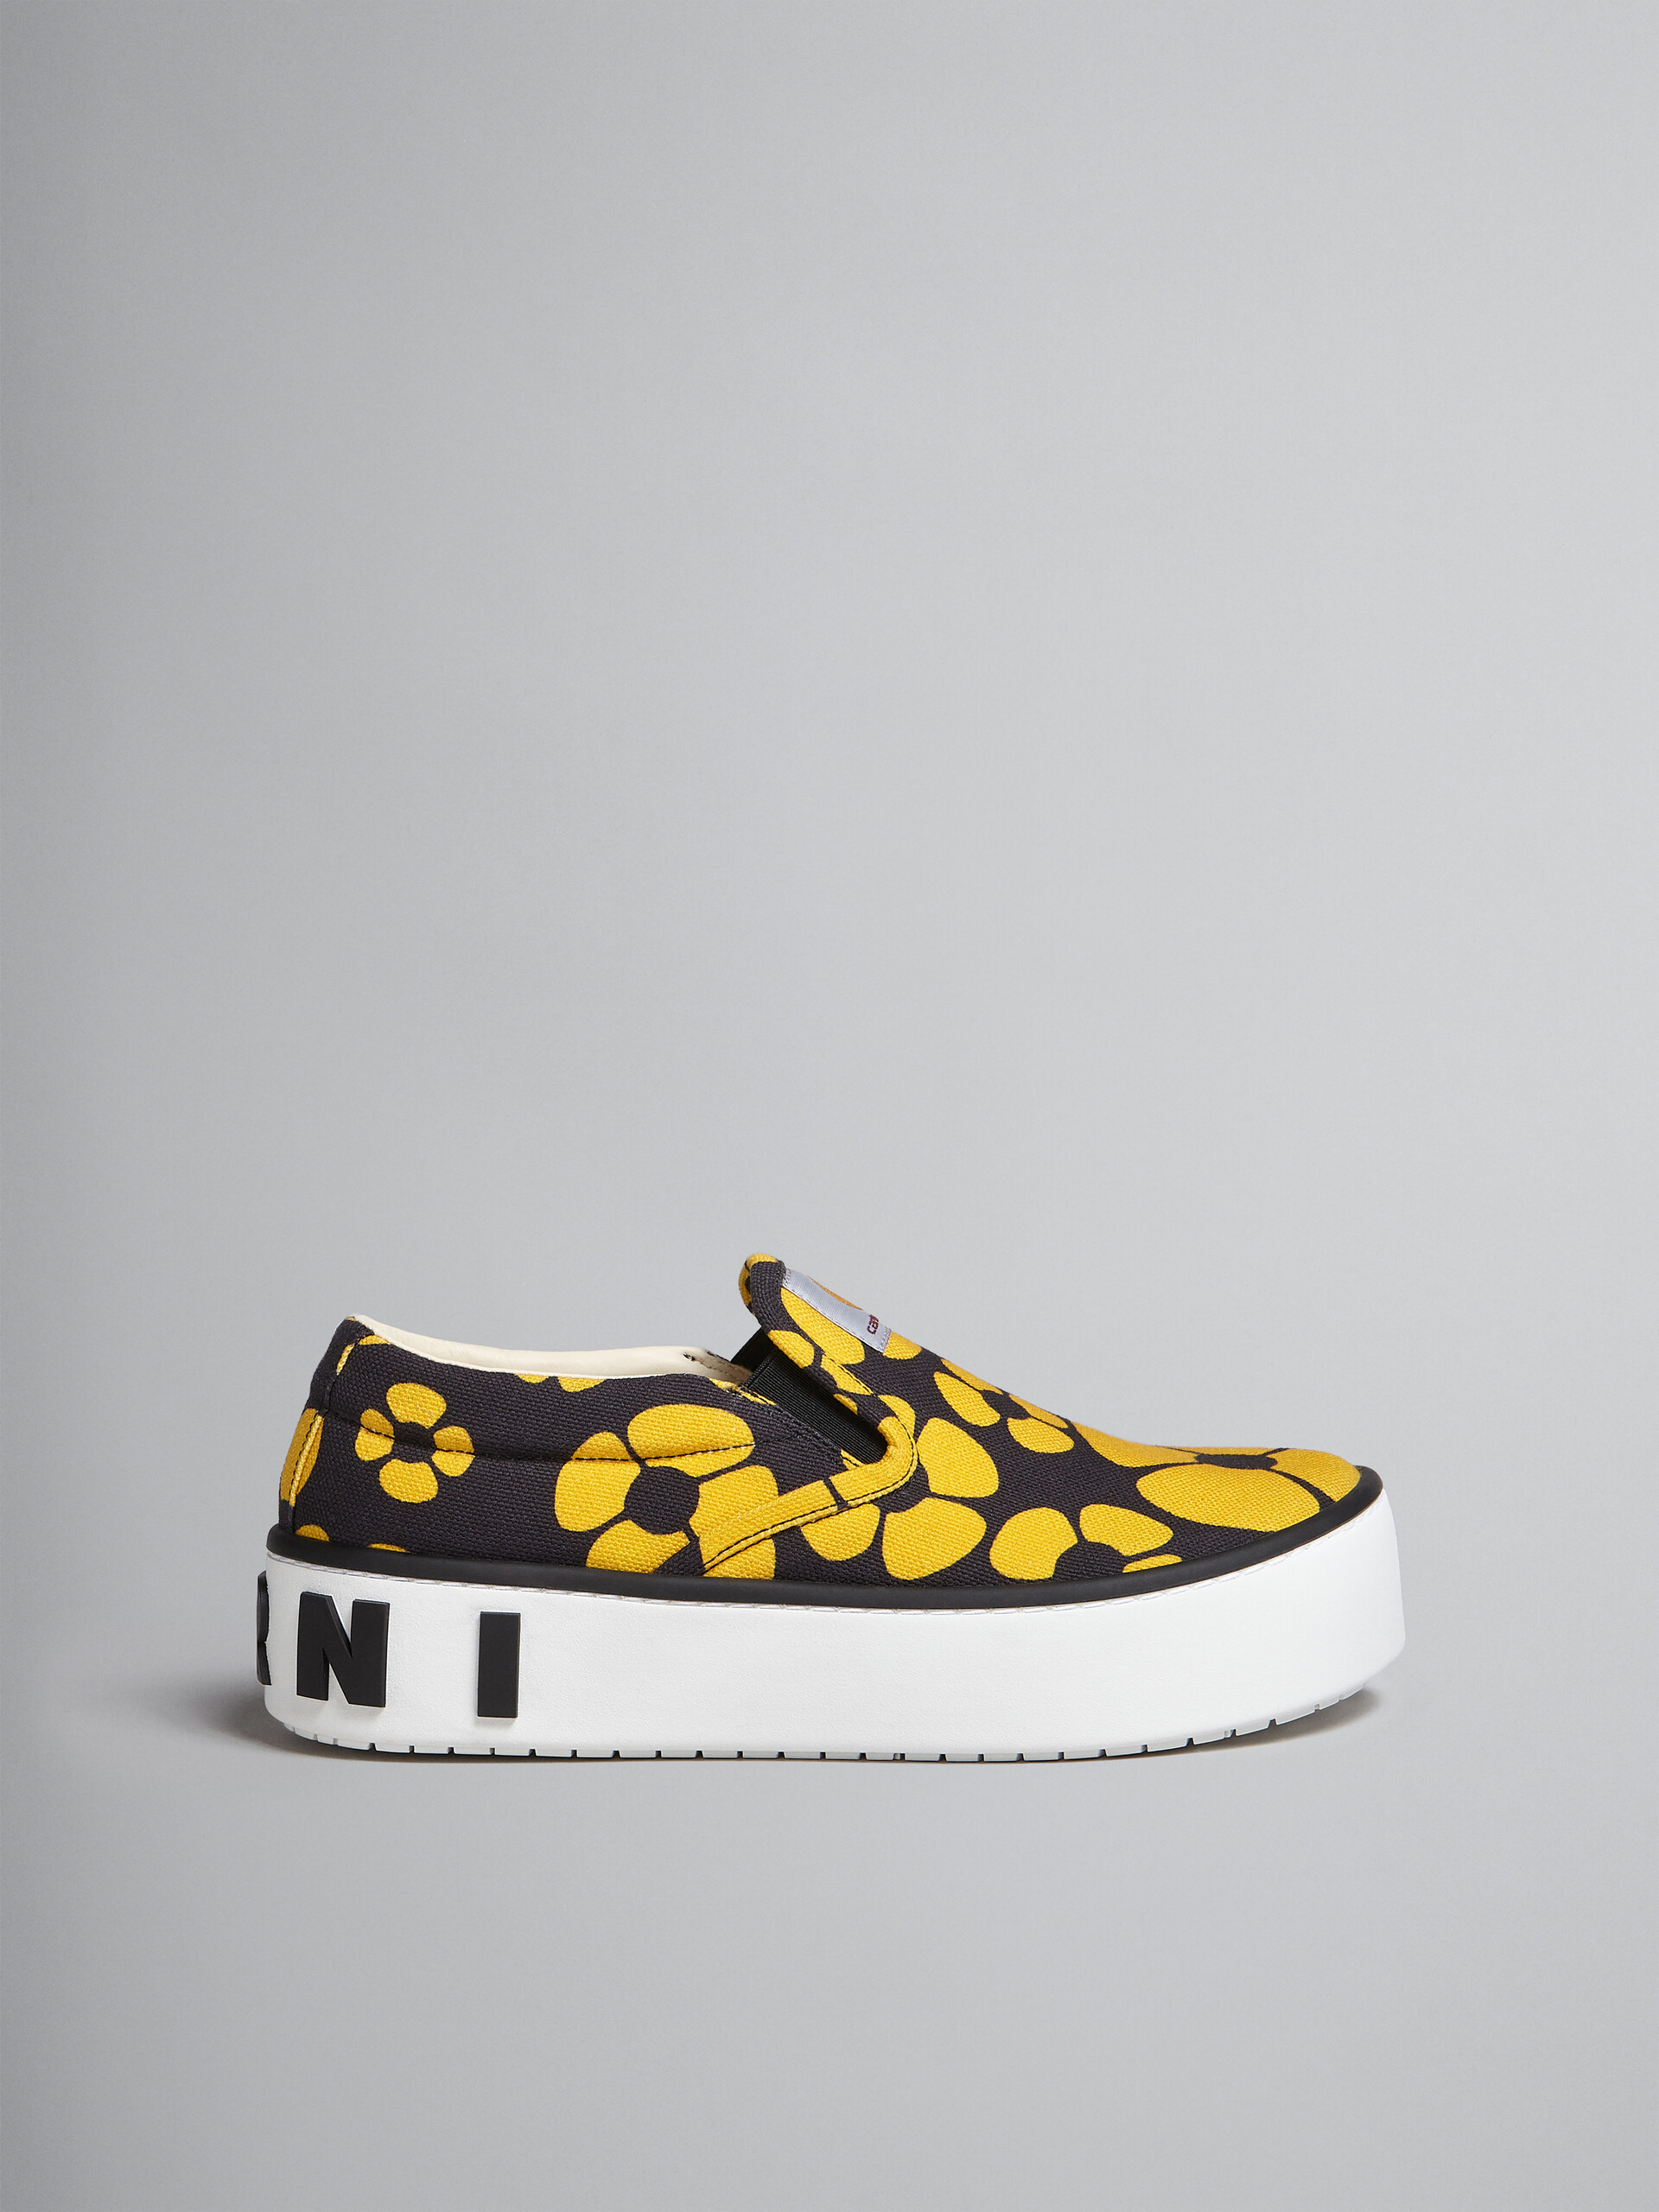 MARNI x CARHARTT WIP - yellow slip-on sneakers - Sneakers - Image 1